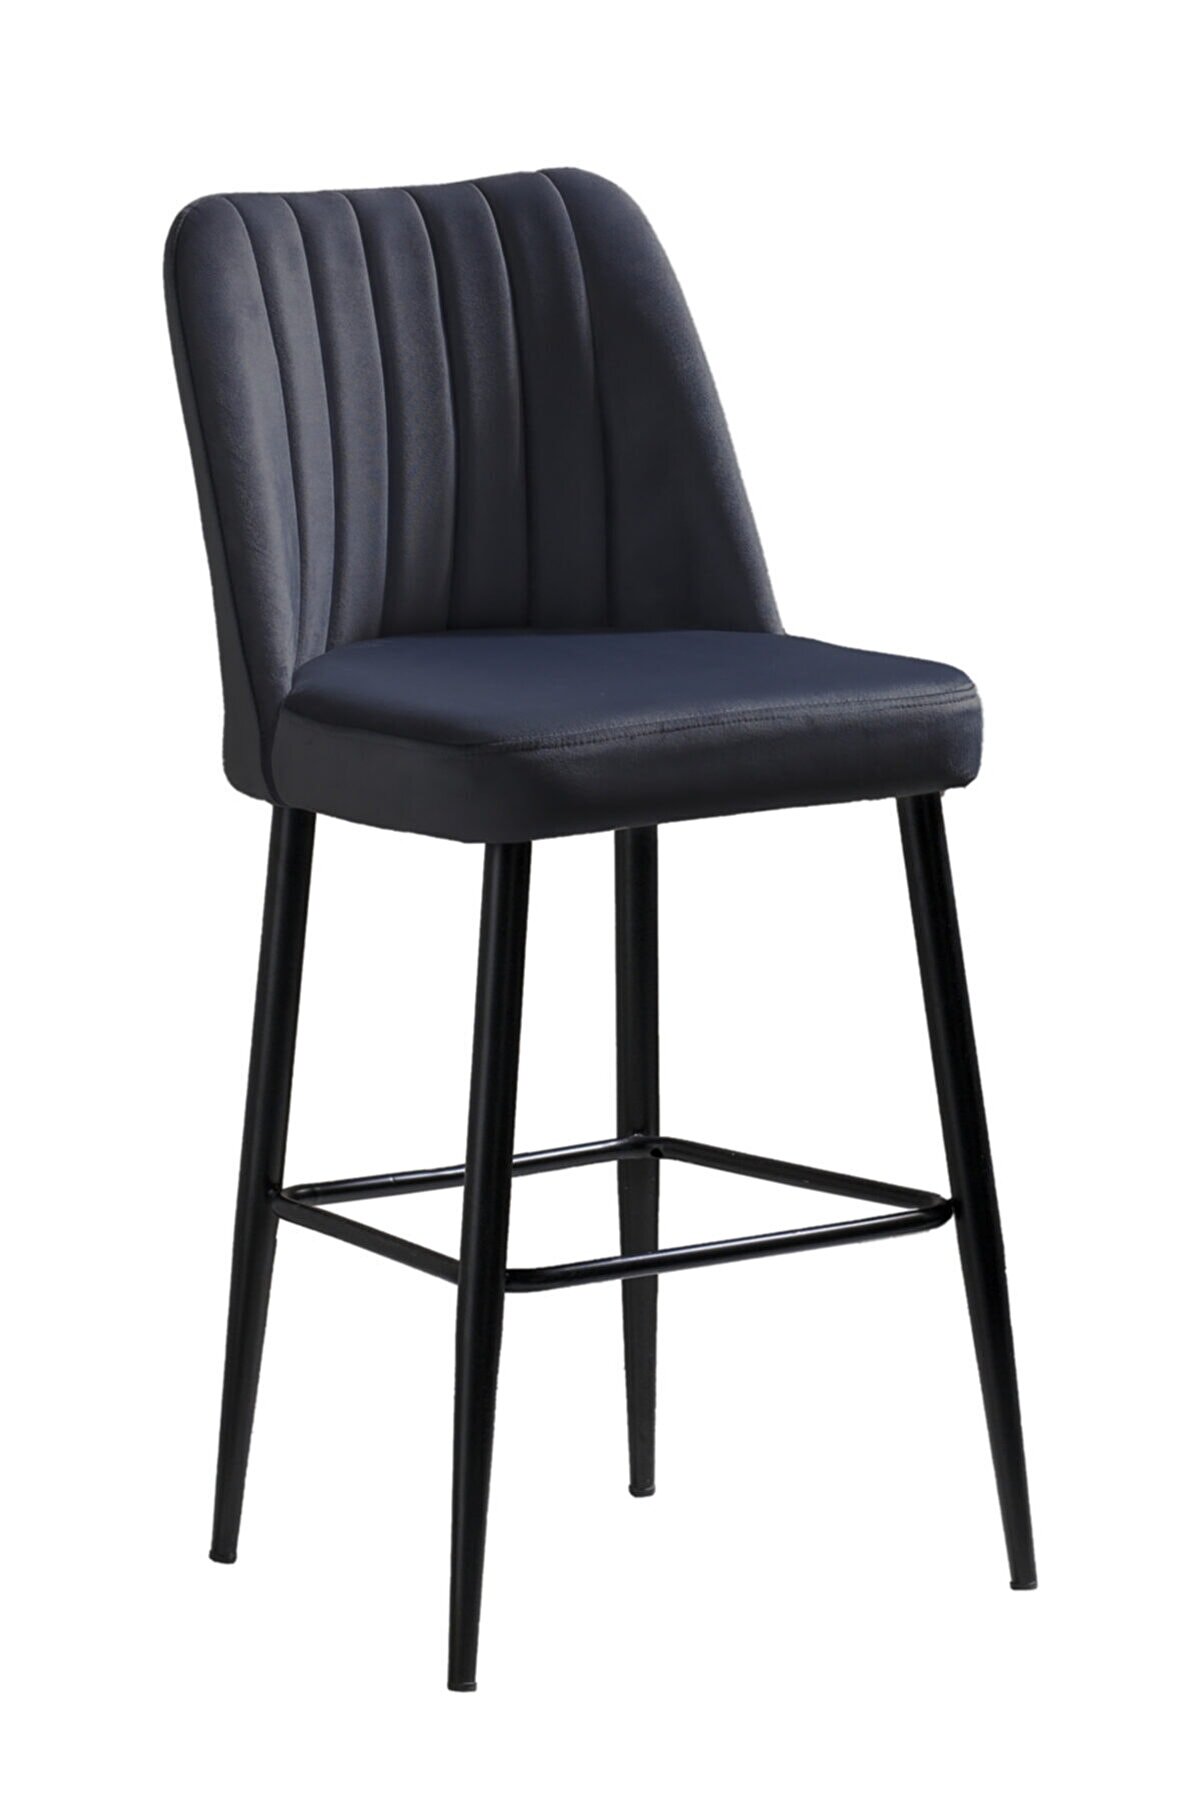 Mymassa Ada Mutfak Sandalyesi - Düz Renk Ithal Kumaş - Bar Sandalyesi Taburesi - Metal Siyah Ayak Sandalye